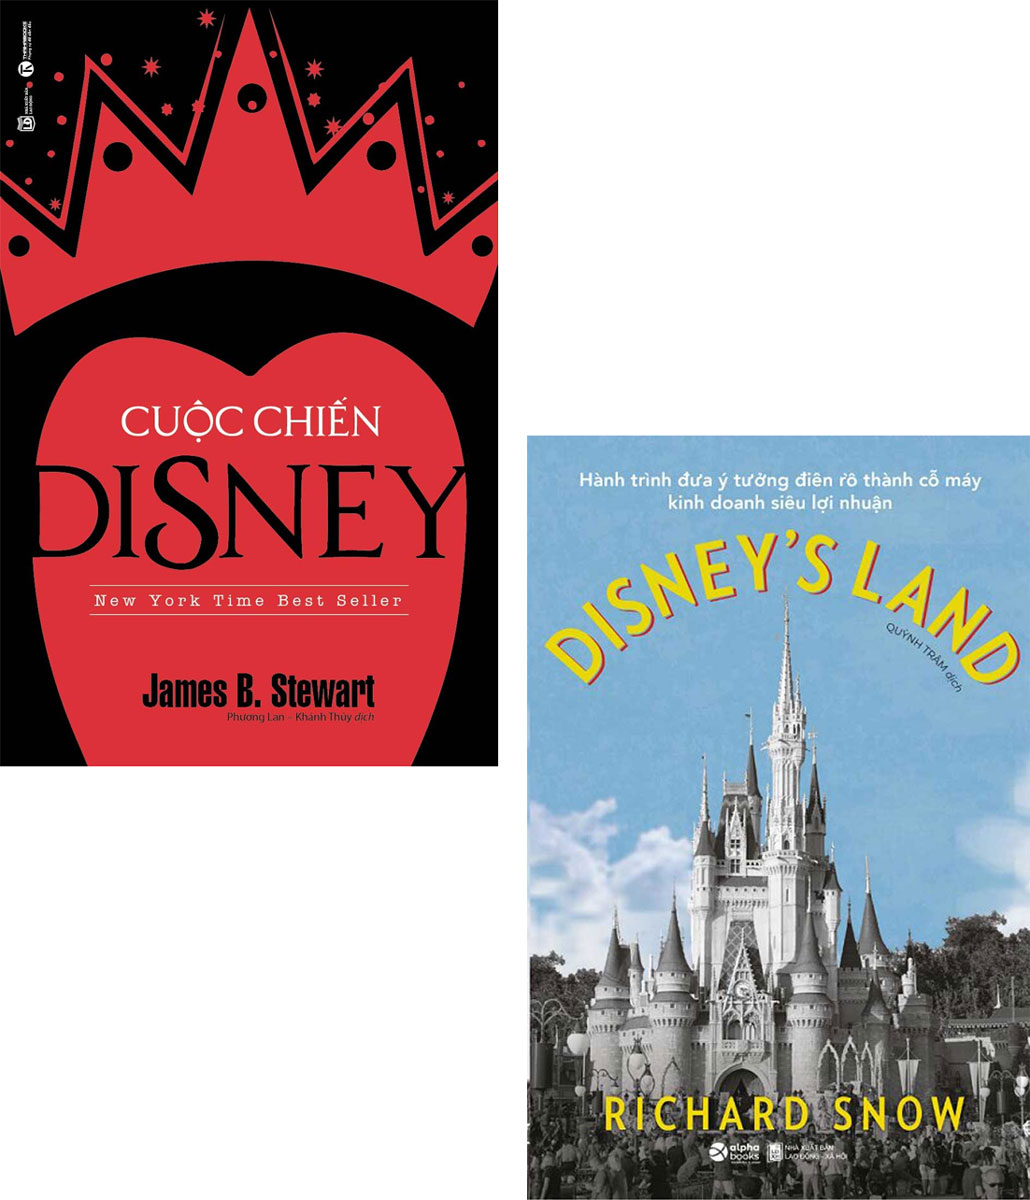 Combo Disney's Land - Hành Trình Đưa Ý Tưởng Điên Rồ Thành Cỗ Máy Kinh Doanh Siêu Lợi Nhuận + Cuộc Chiến Disney (Bộ 2 Cuốn)